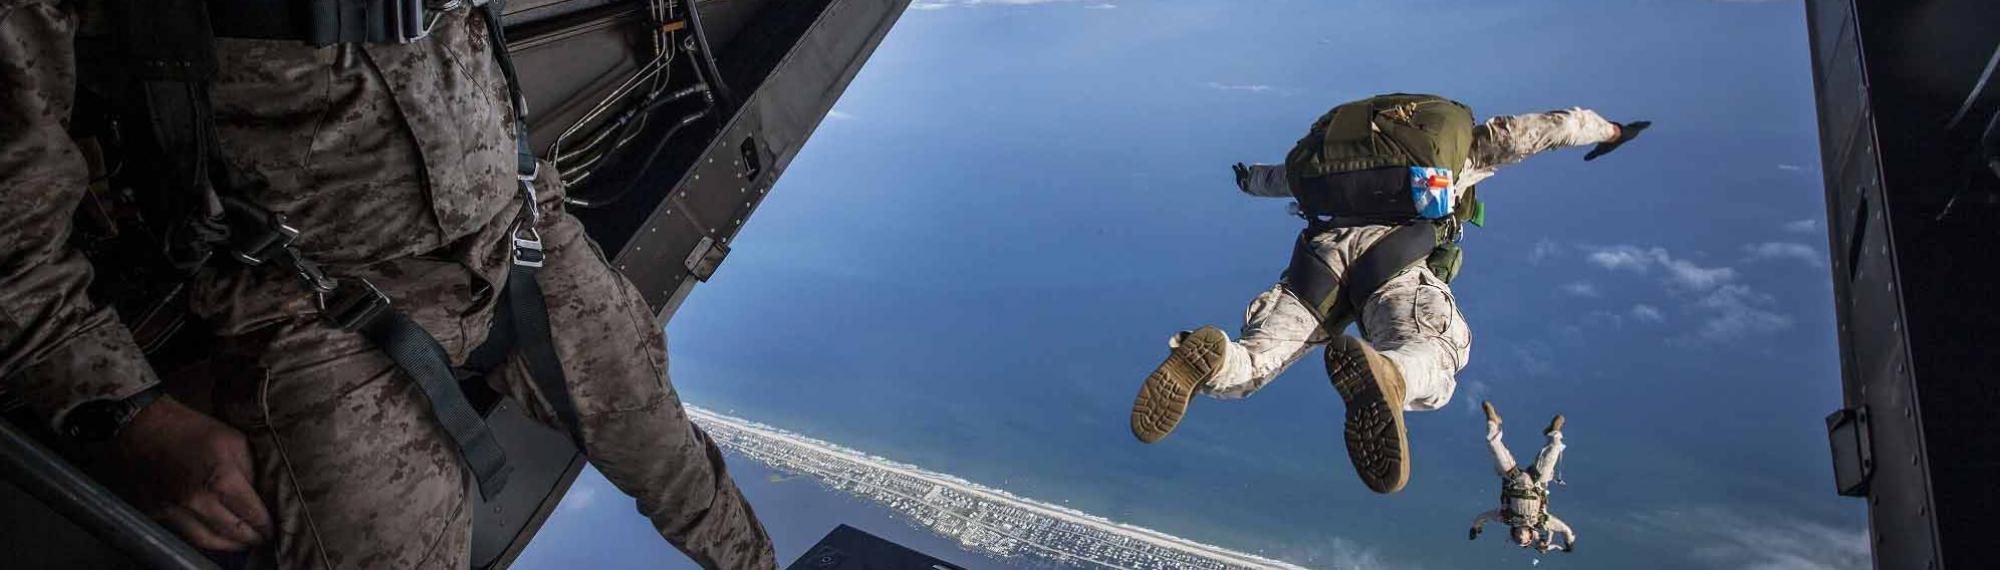 Airforce parachute jump